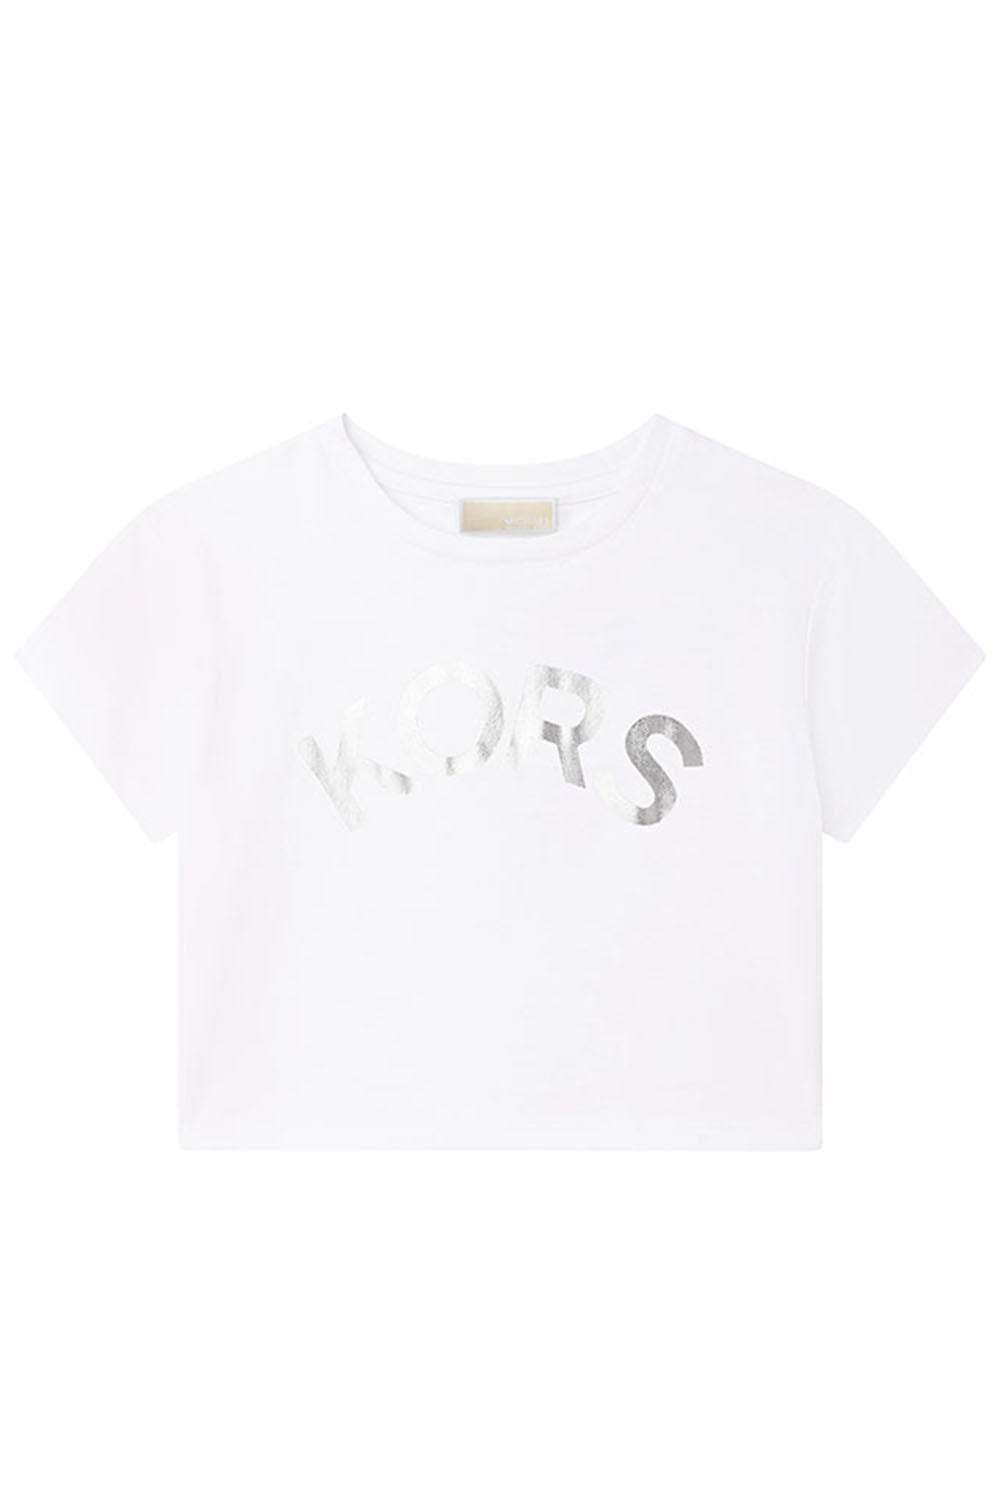 Mk Logo T Shirt for Girls - Maison7